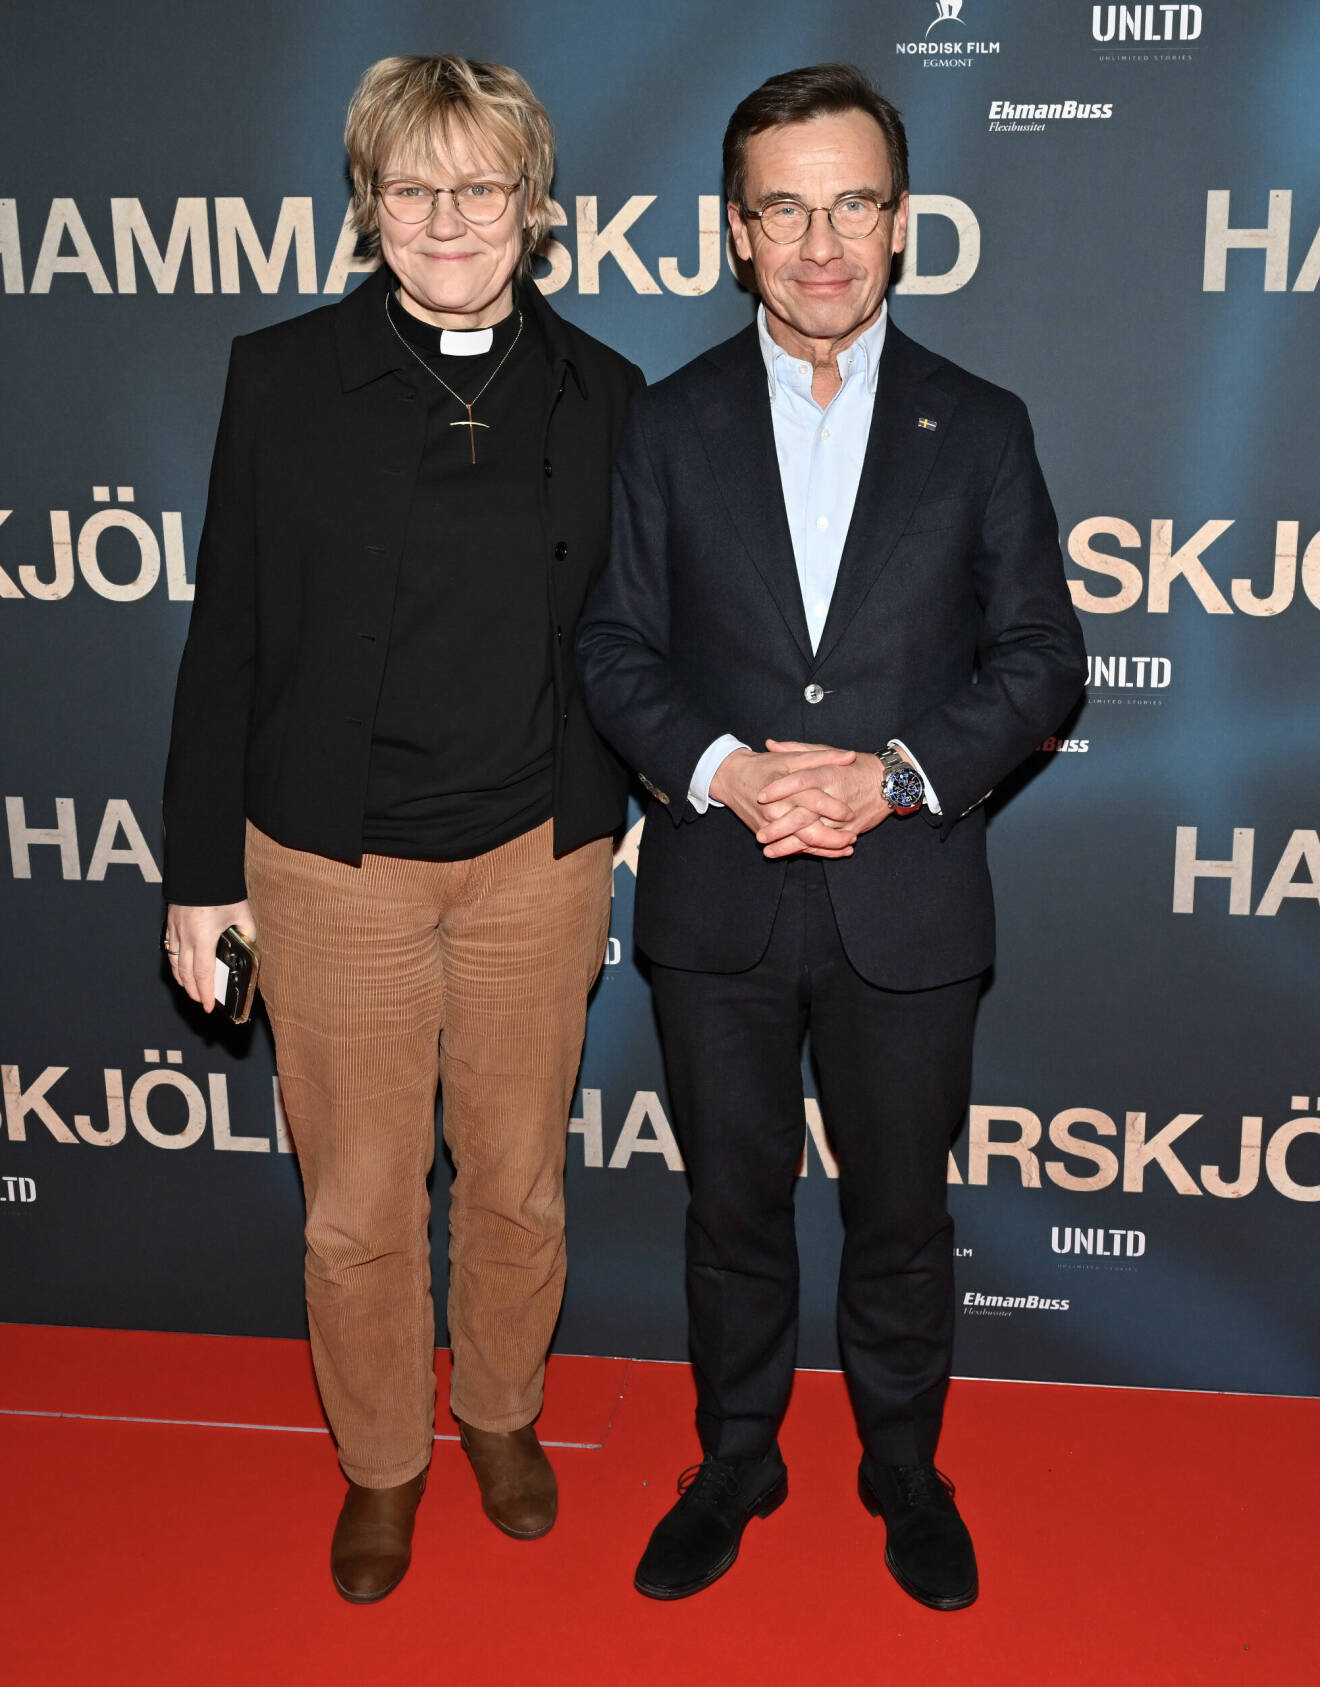 Statsminister Ulf Kristersson med hustru Birgitta Ed på galapremiären av filmen Hammarskjöld på Filmstaden Sergel.